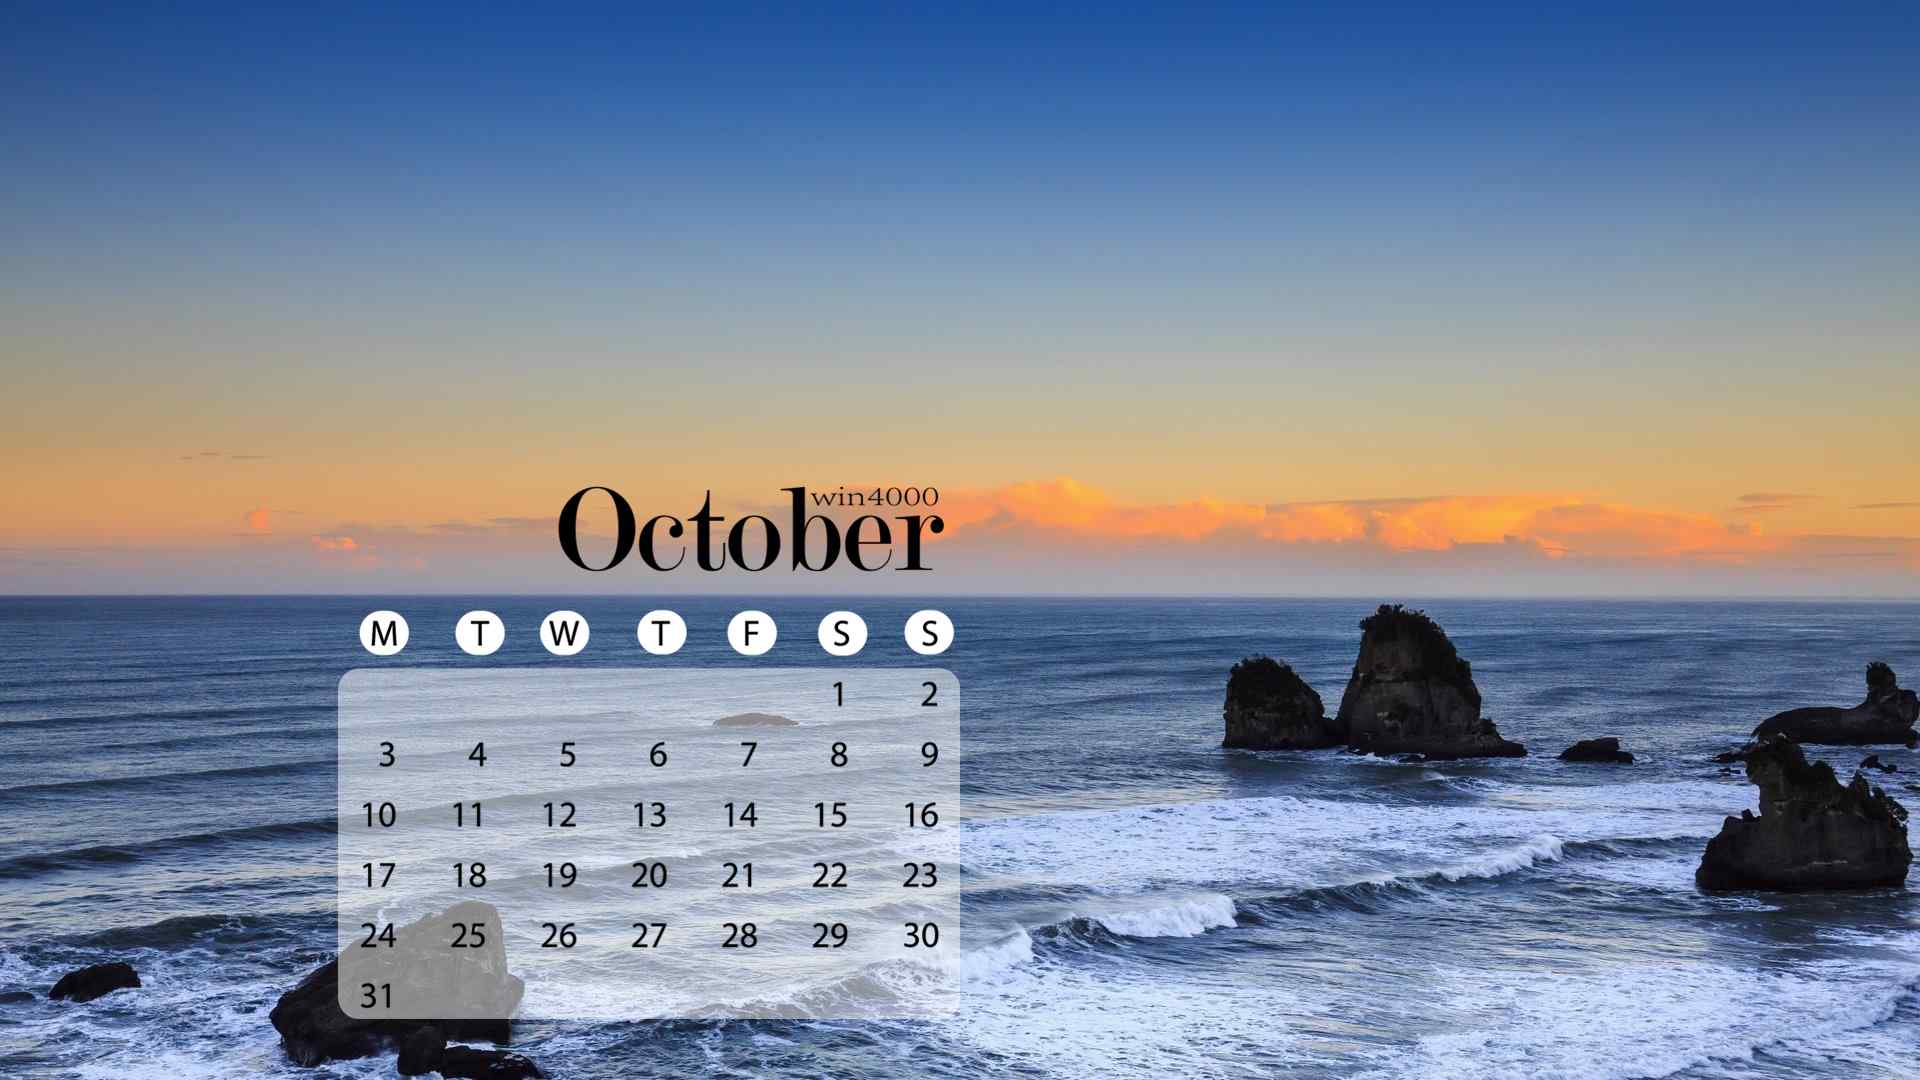 2016年10月日历奇幻绚丽的新西兰云层电脑桌面壁纸